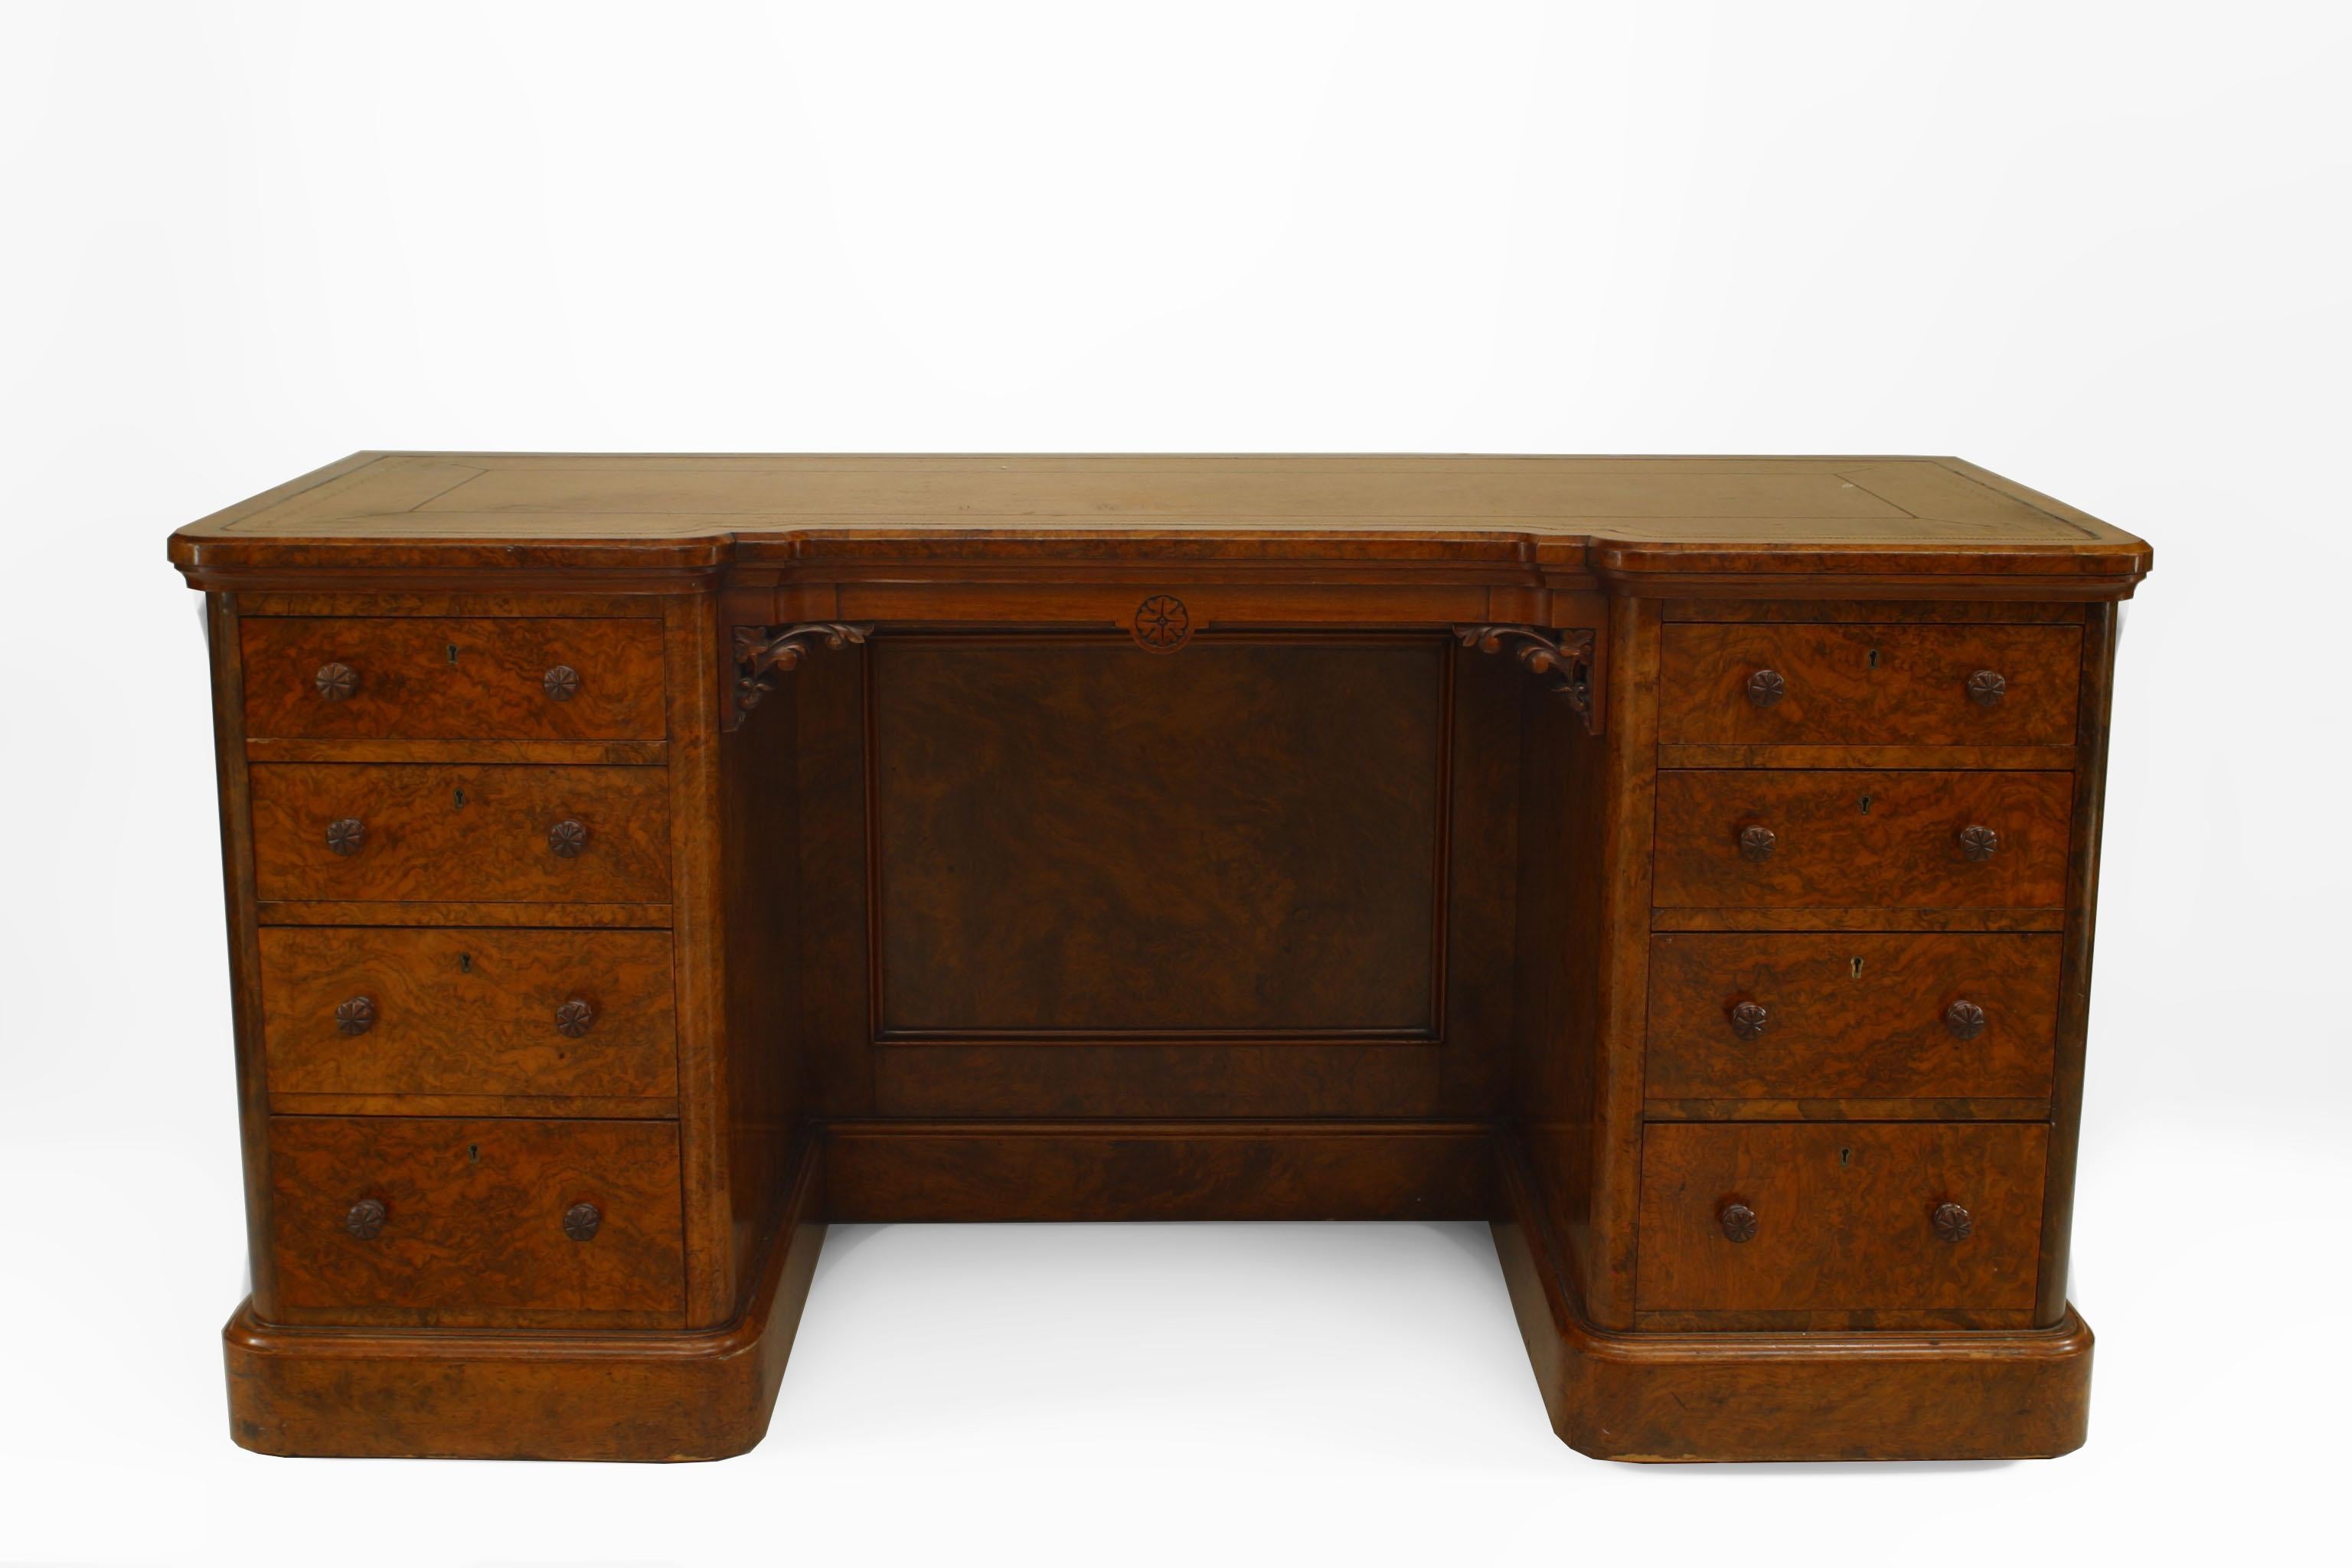 Englischer viktorianischer Nussbaum-Doppelsockel-Schreibtisch mit 8 Schubladen und einem Eitelkeitspaneel in der Mitte mit einer braunen Lederplatte, die einen goldfarbenen Rand hat.
